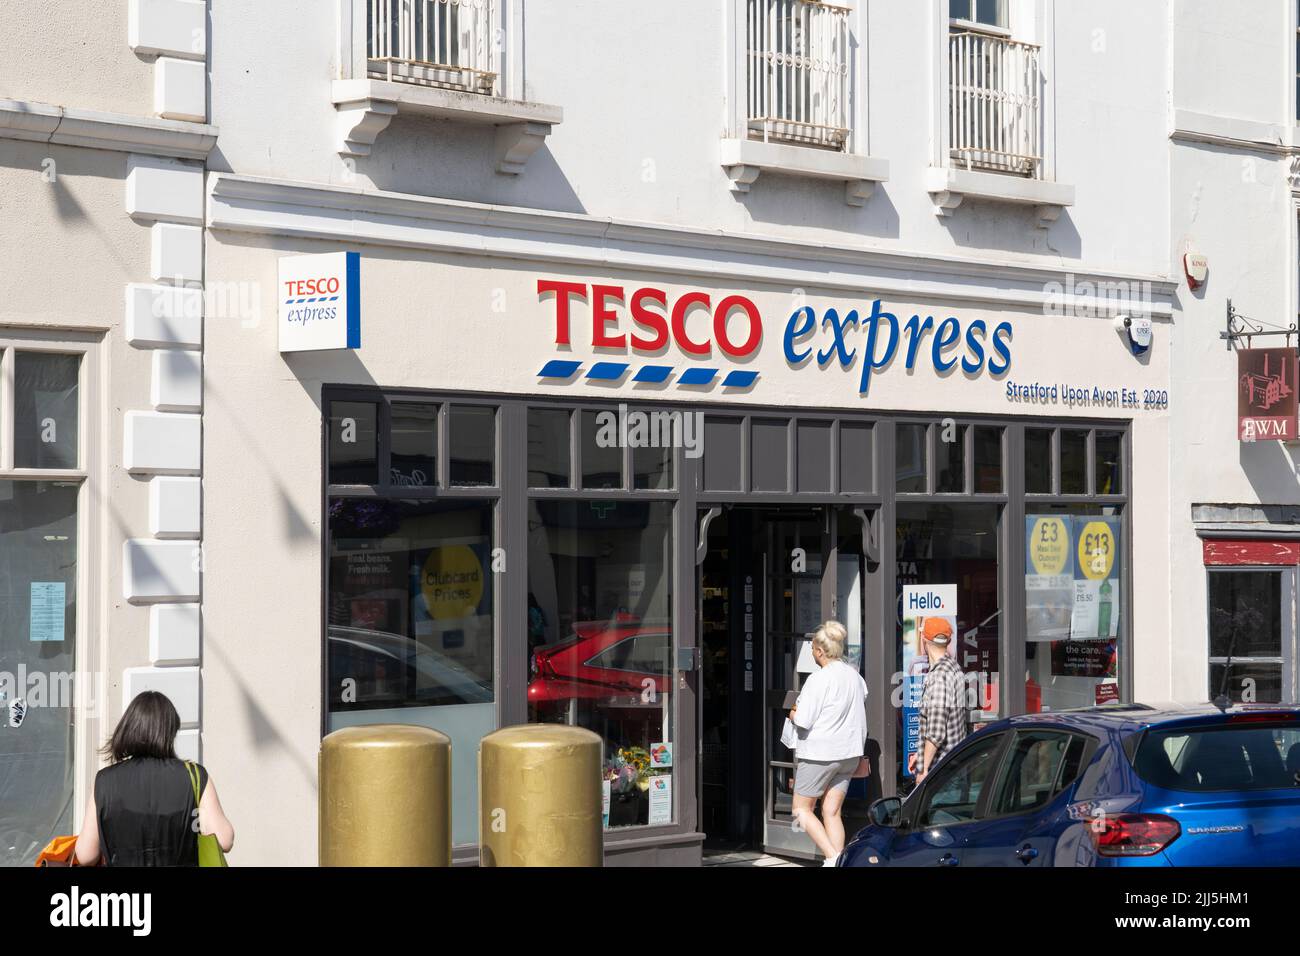 Los compradores entran en un Tesco Express en Bridge Street en Stratford Upon Avon, Inglaterra. Concepto - costo de vida, compras de alimentos, aumento de la inflación Foto de stock